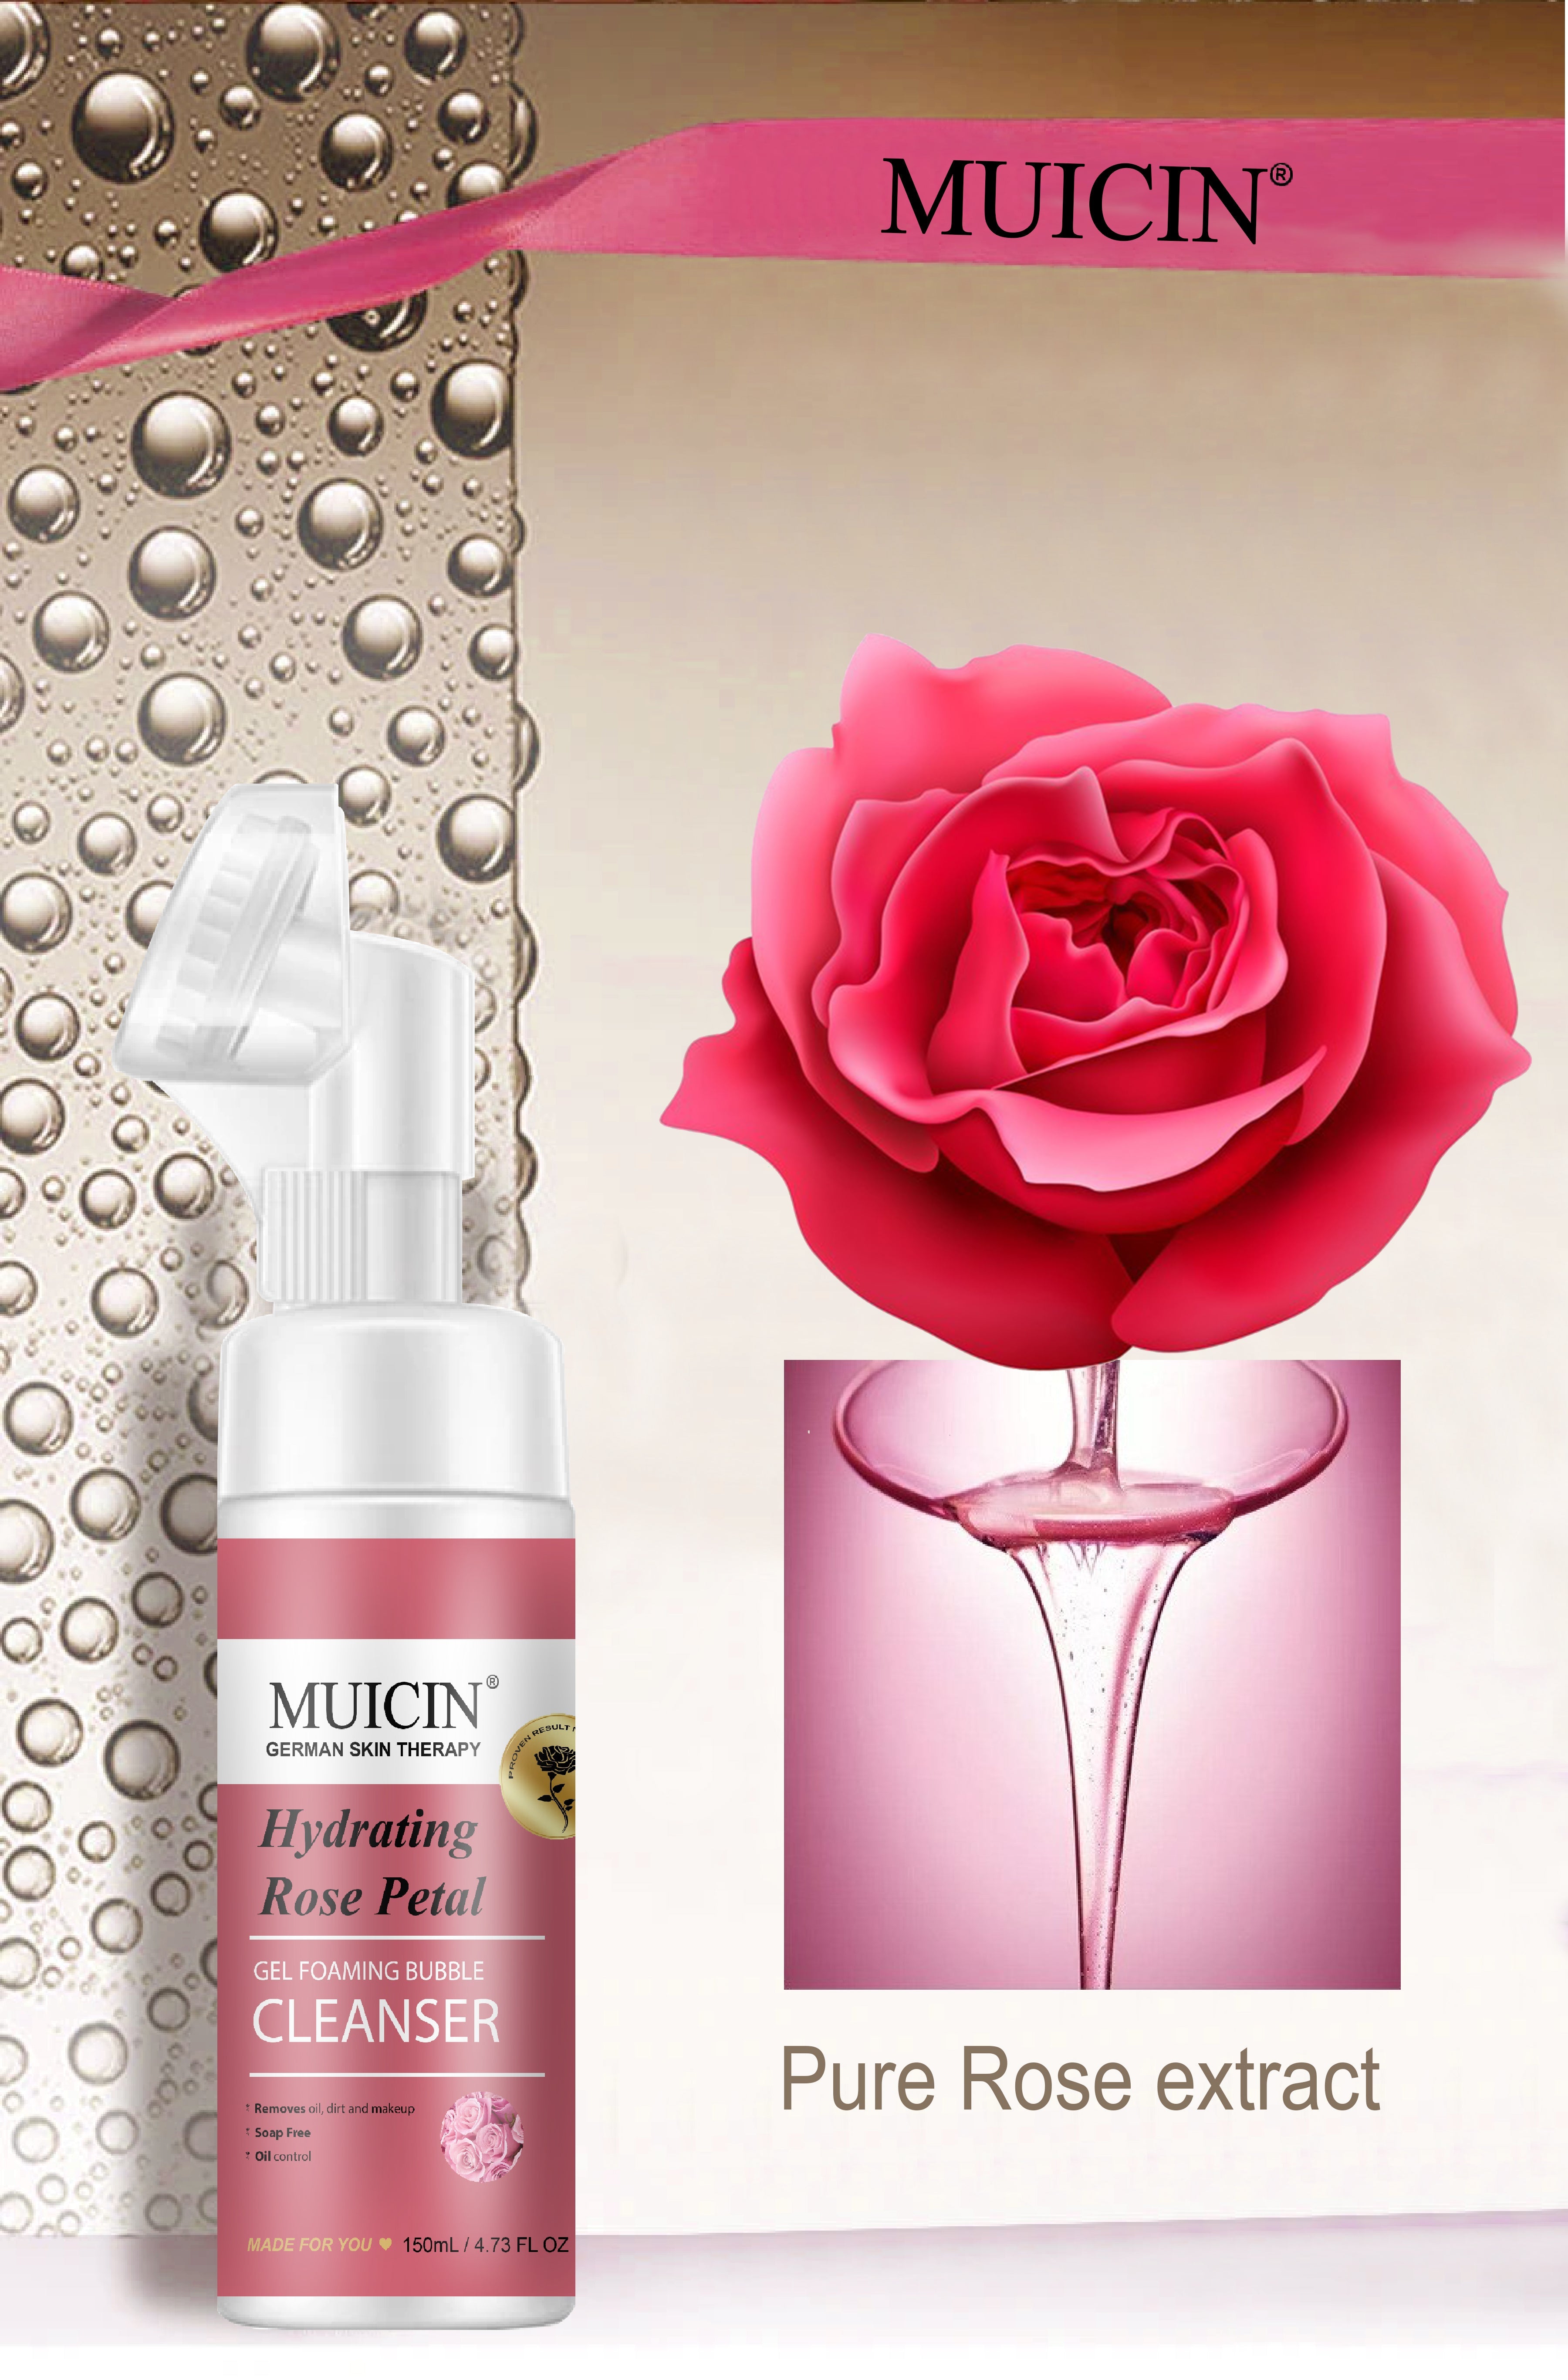 MUICIN - Rose Petal Gel Foaming Bubble Cleanser - 150ml